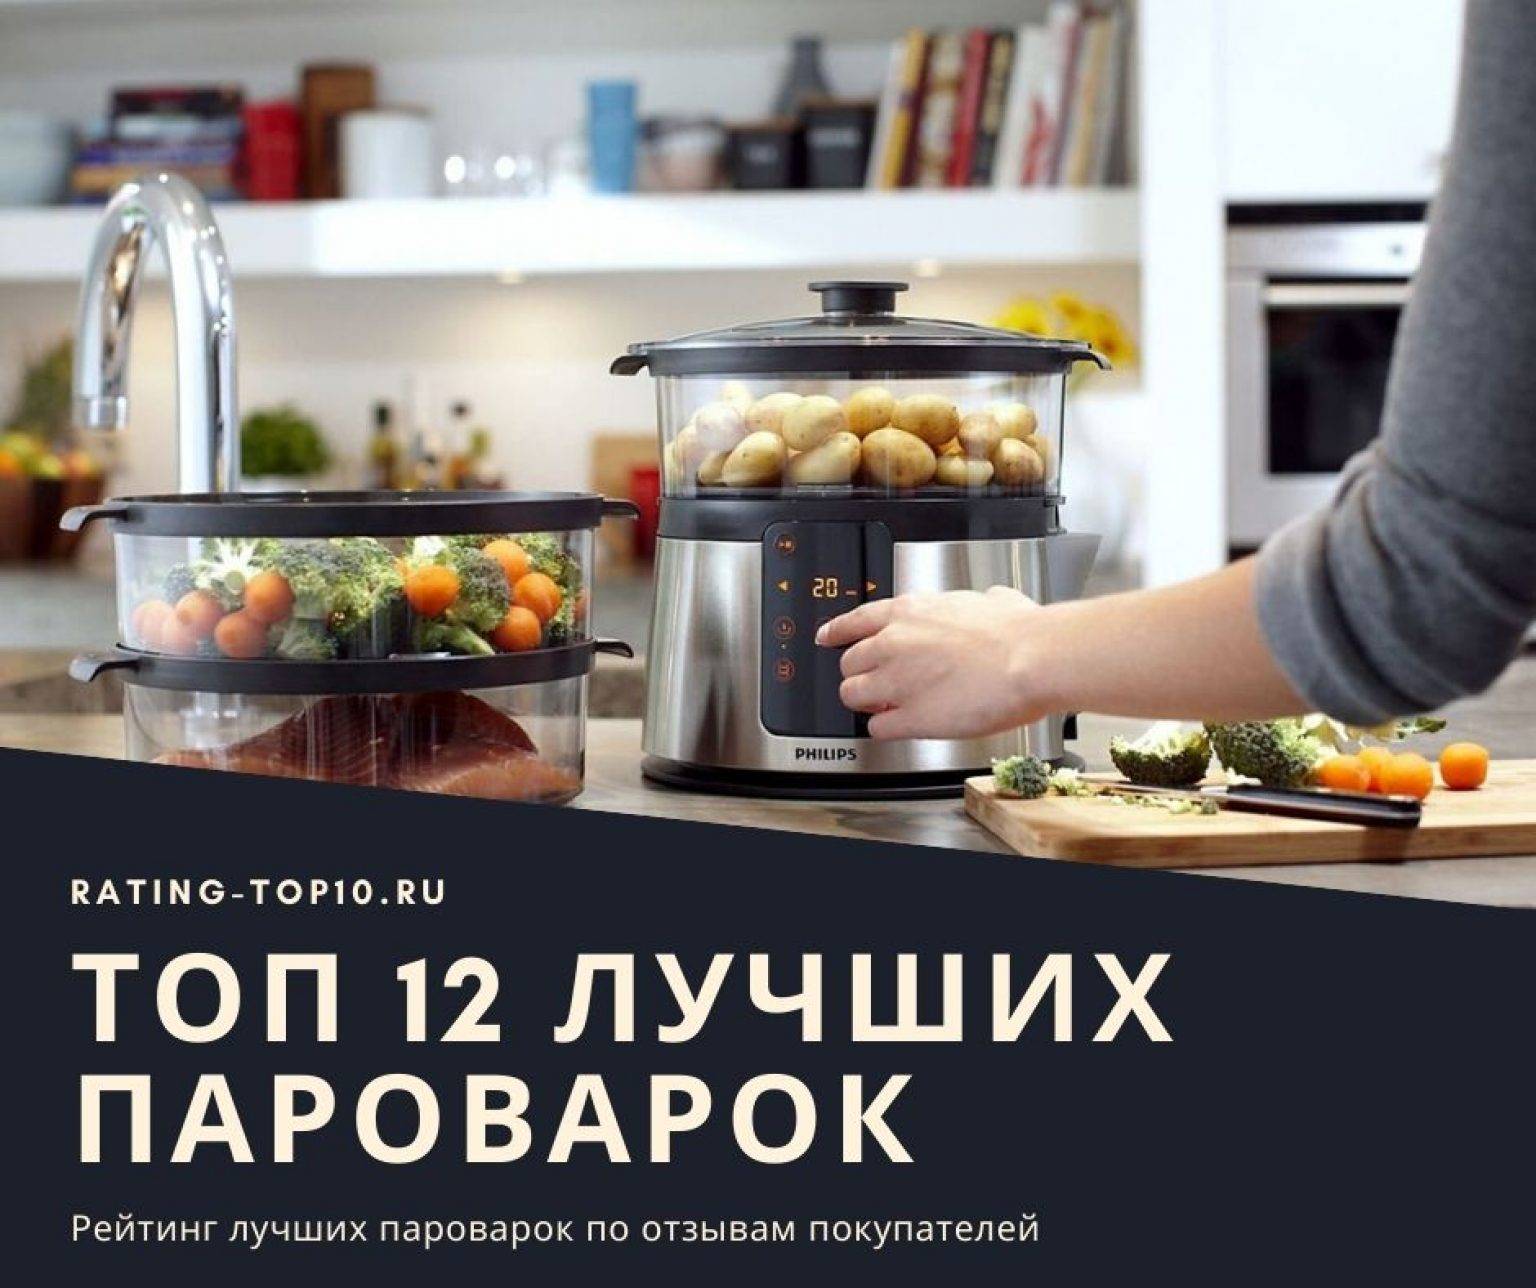 Кухонный помощник для здорового образа жизни: топ-рейтинг лучших пароварок-блендеров на 2020 год